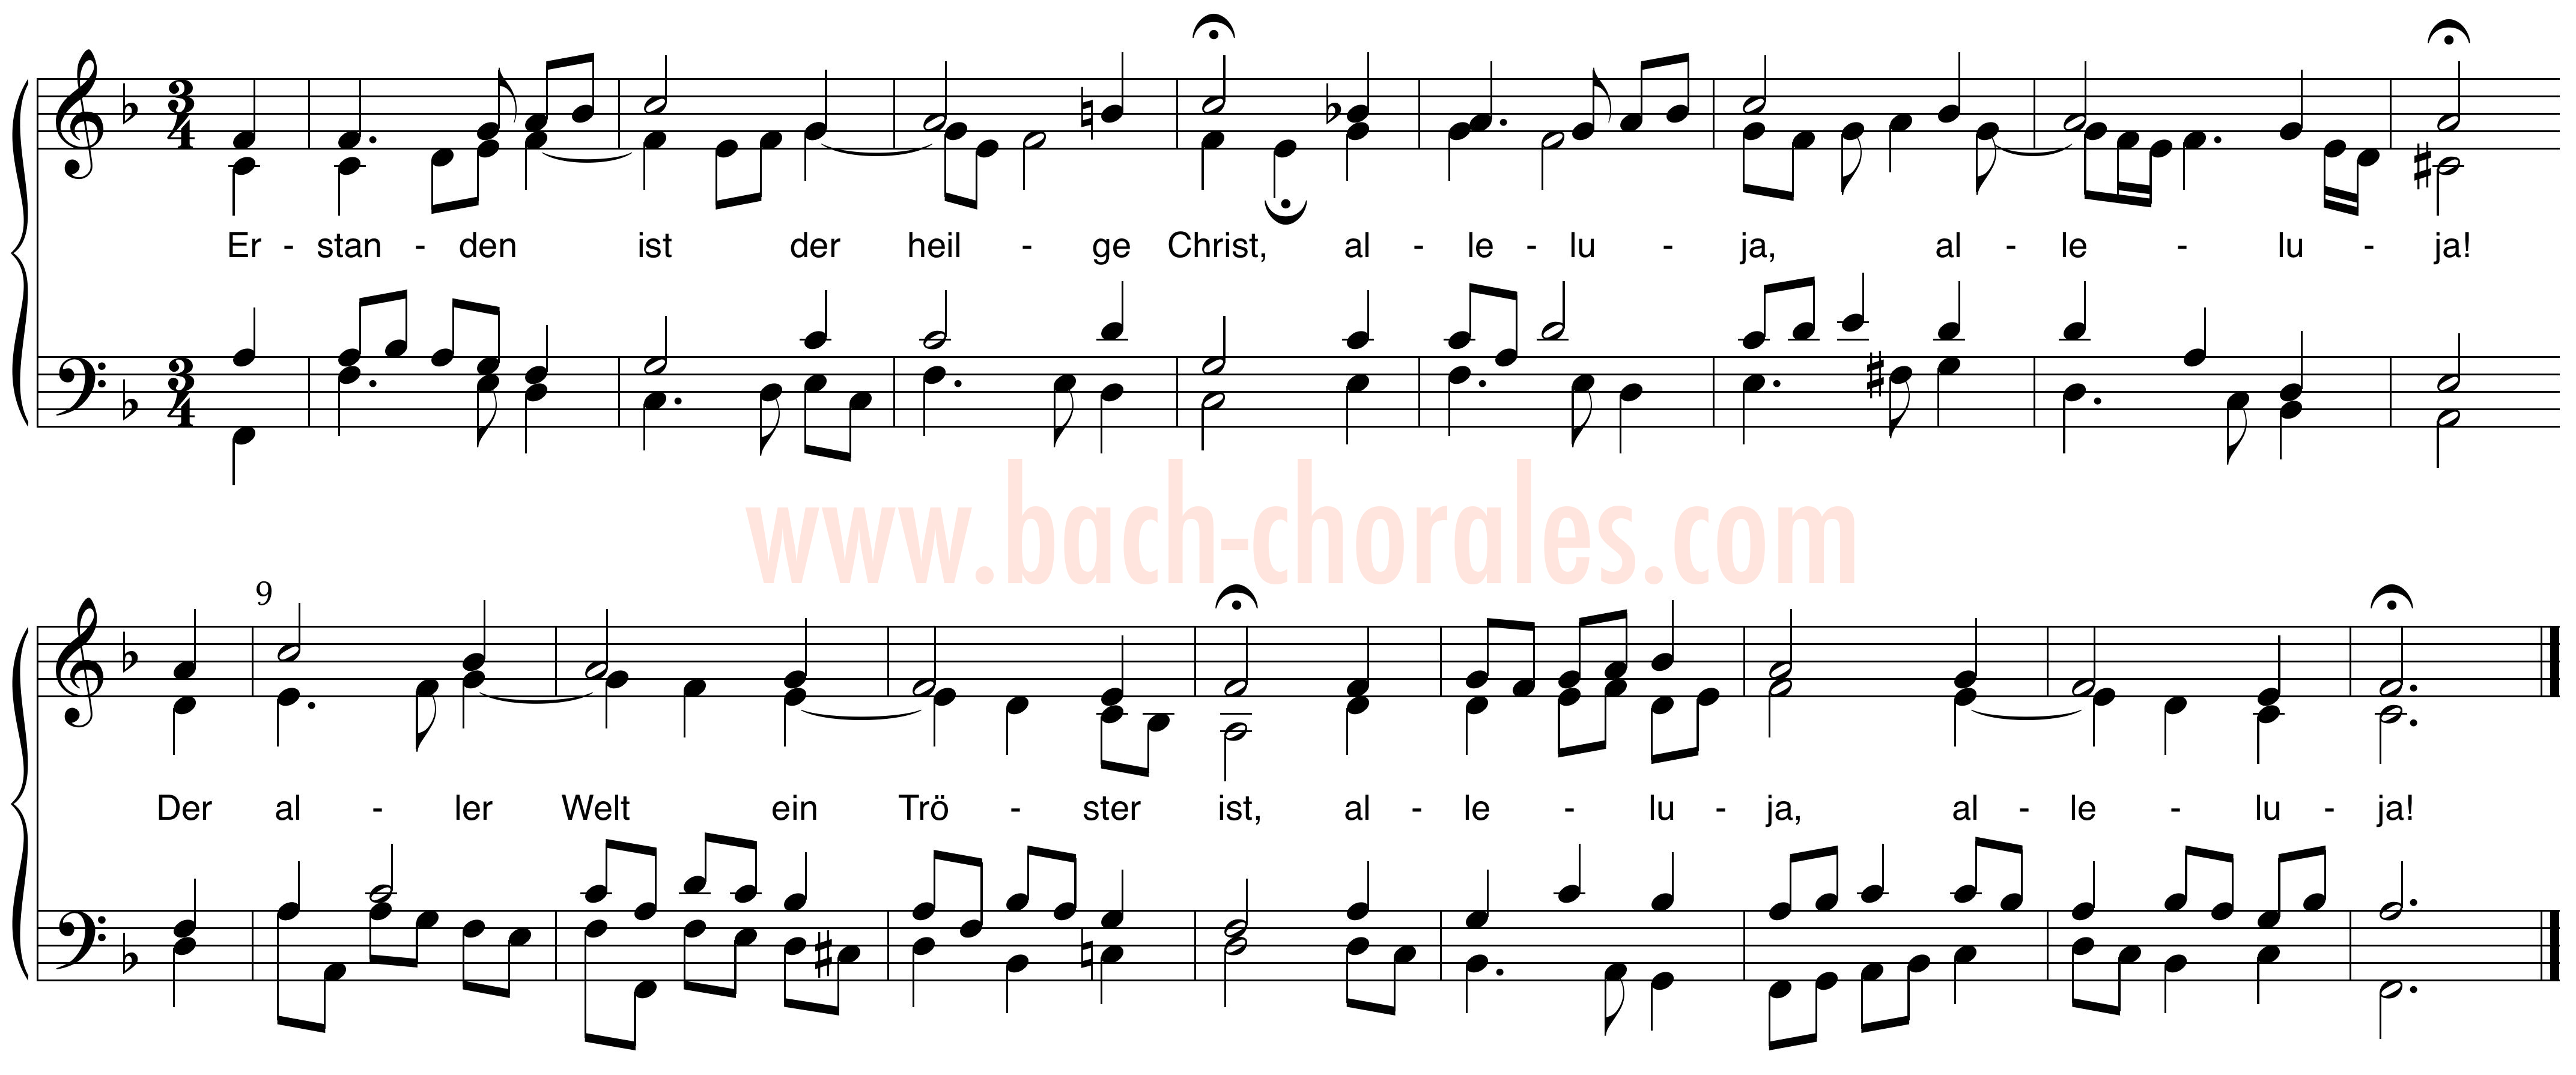 notenbeeld BWV 306 op https://www.bach-chorales.com/